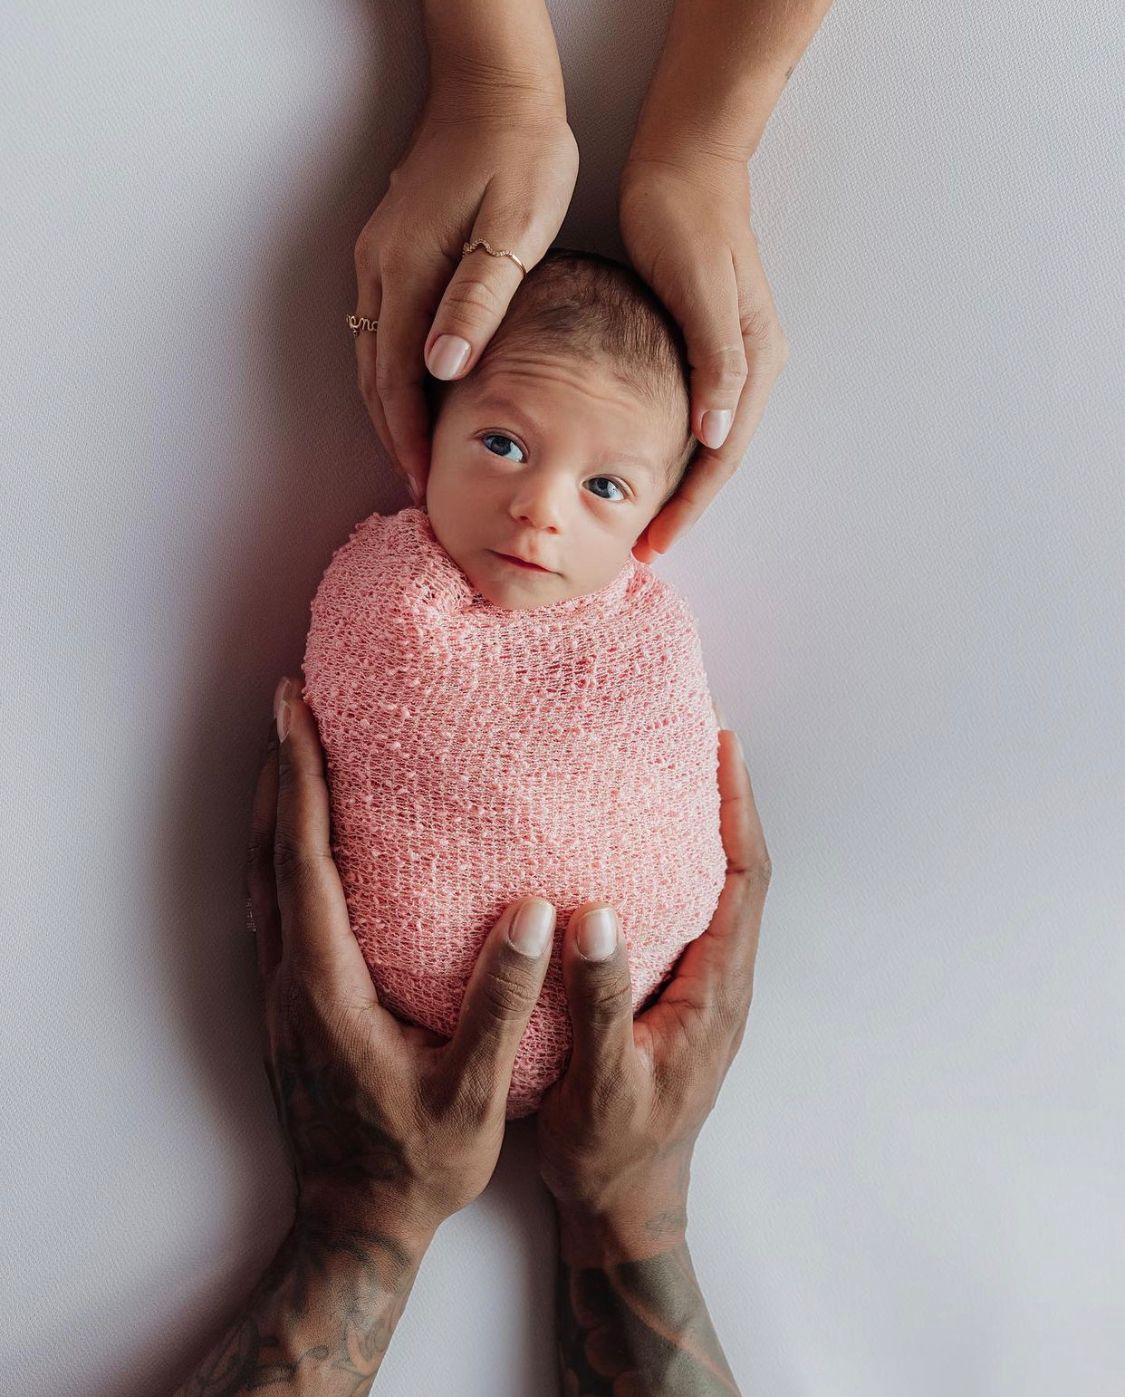 Lore Improta compartilha foto da filha em ensaio newborn 